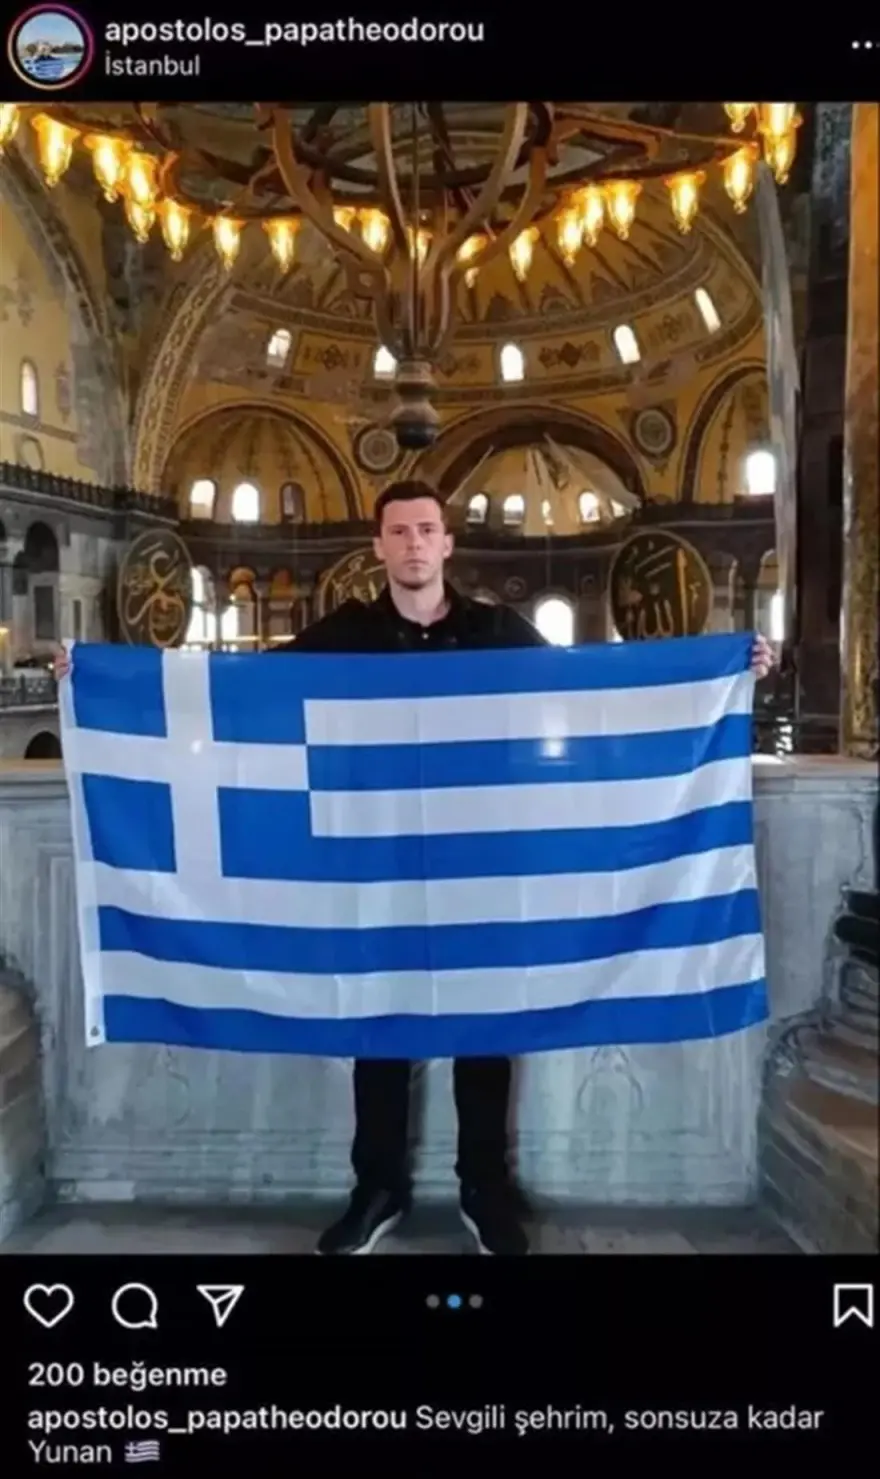 Έλληνας άνοιξε τη σημαία στην Αγία Σοφία και έγραψε «Αγαπημένη μου Πόλη, για πάντα Ελληνική» - Αντιδράσεις στην Τουρκία